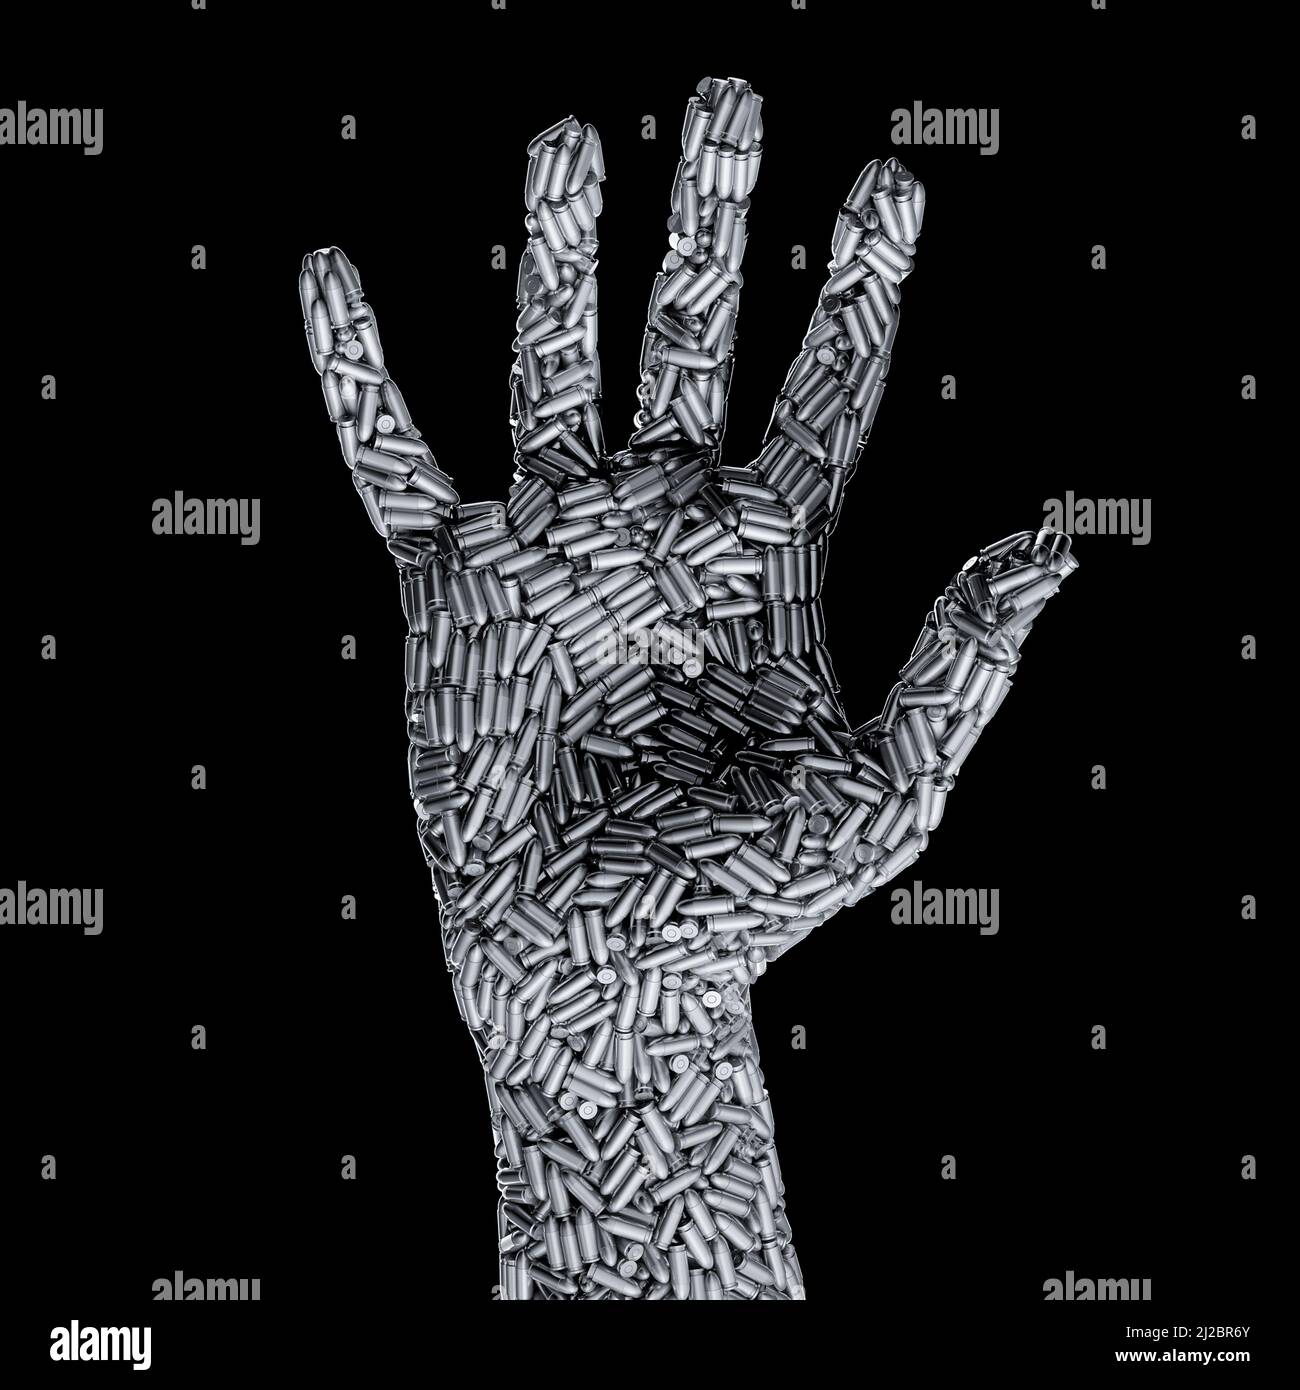 Stop gun violence Metapher - 3D Illustration von Pistolengeschossen, die menschliche Hand bilden, isoliert auf schwarzem Hintergrund Stockfoto